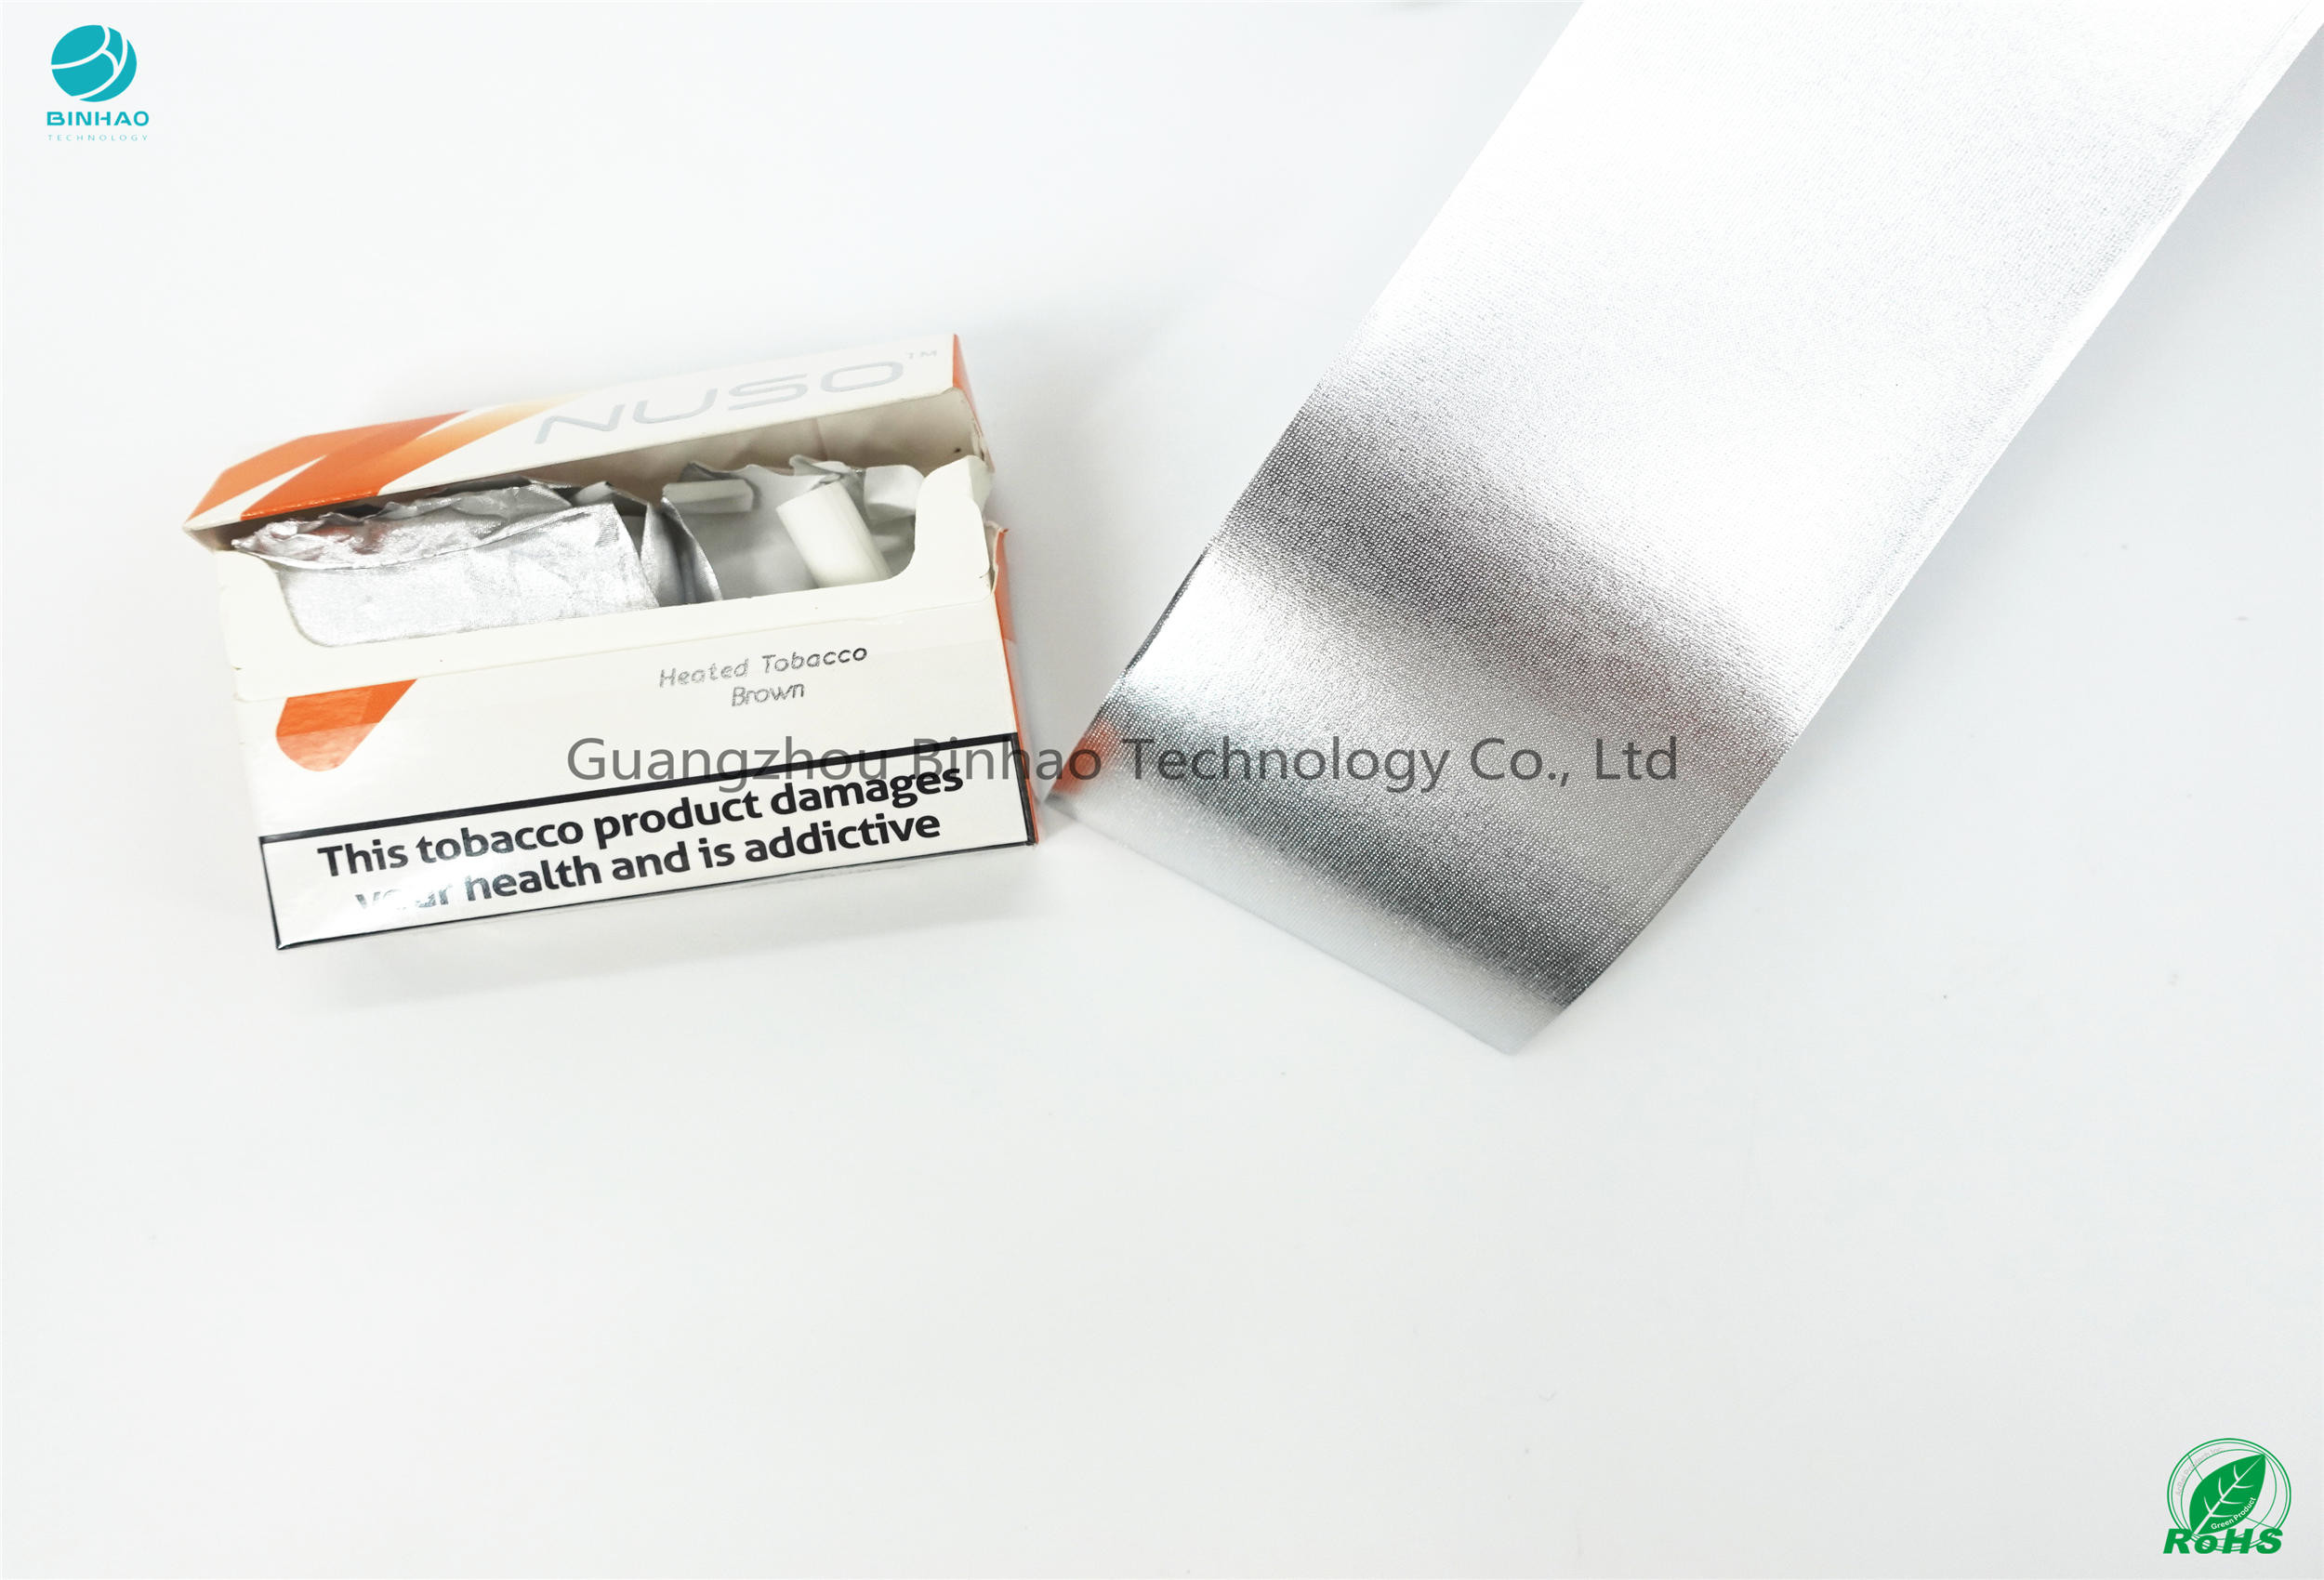 کاغذ بسته بندی سیگار الکترونیکی HNB کاغذ فویل آلومینیوم سازگار با محیط زیست 55 گرم